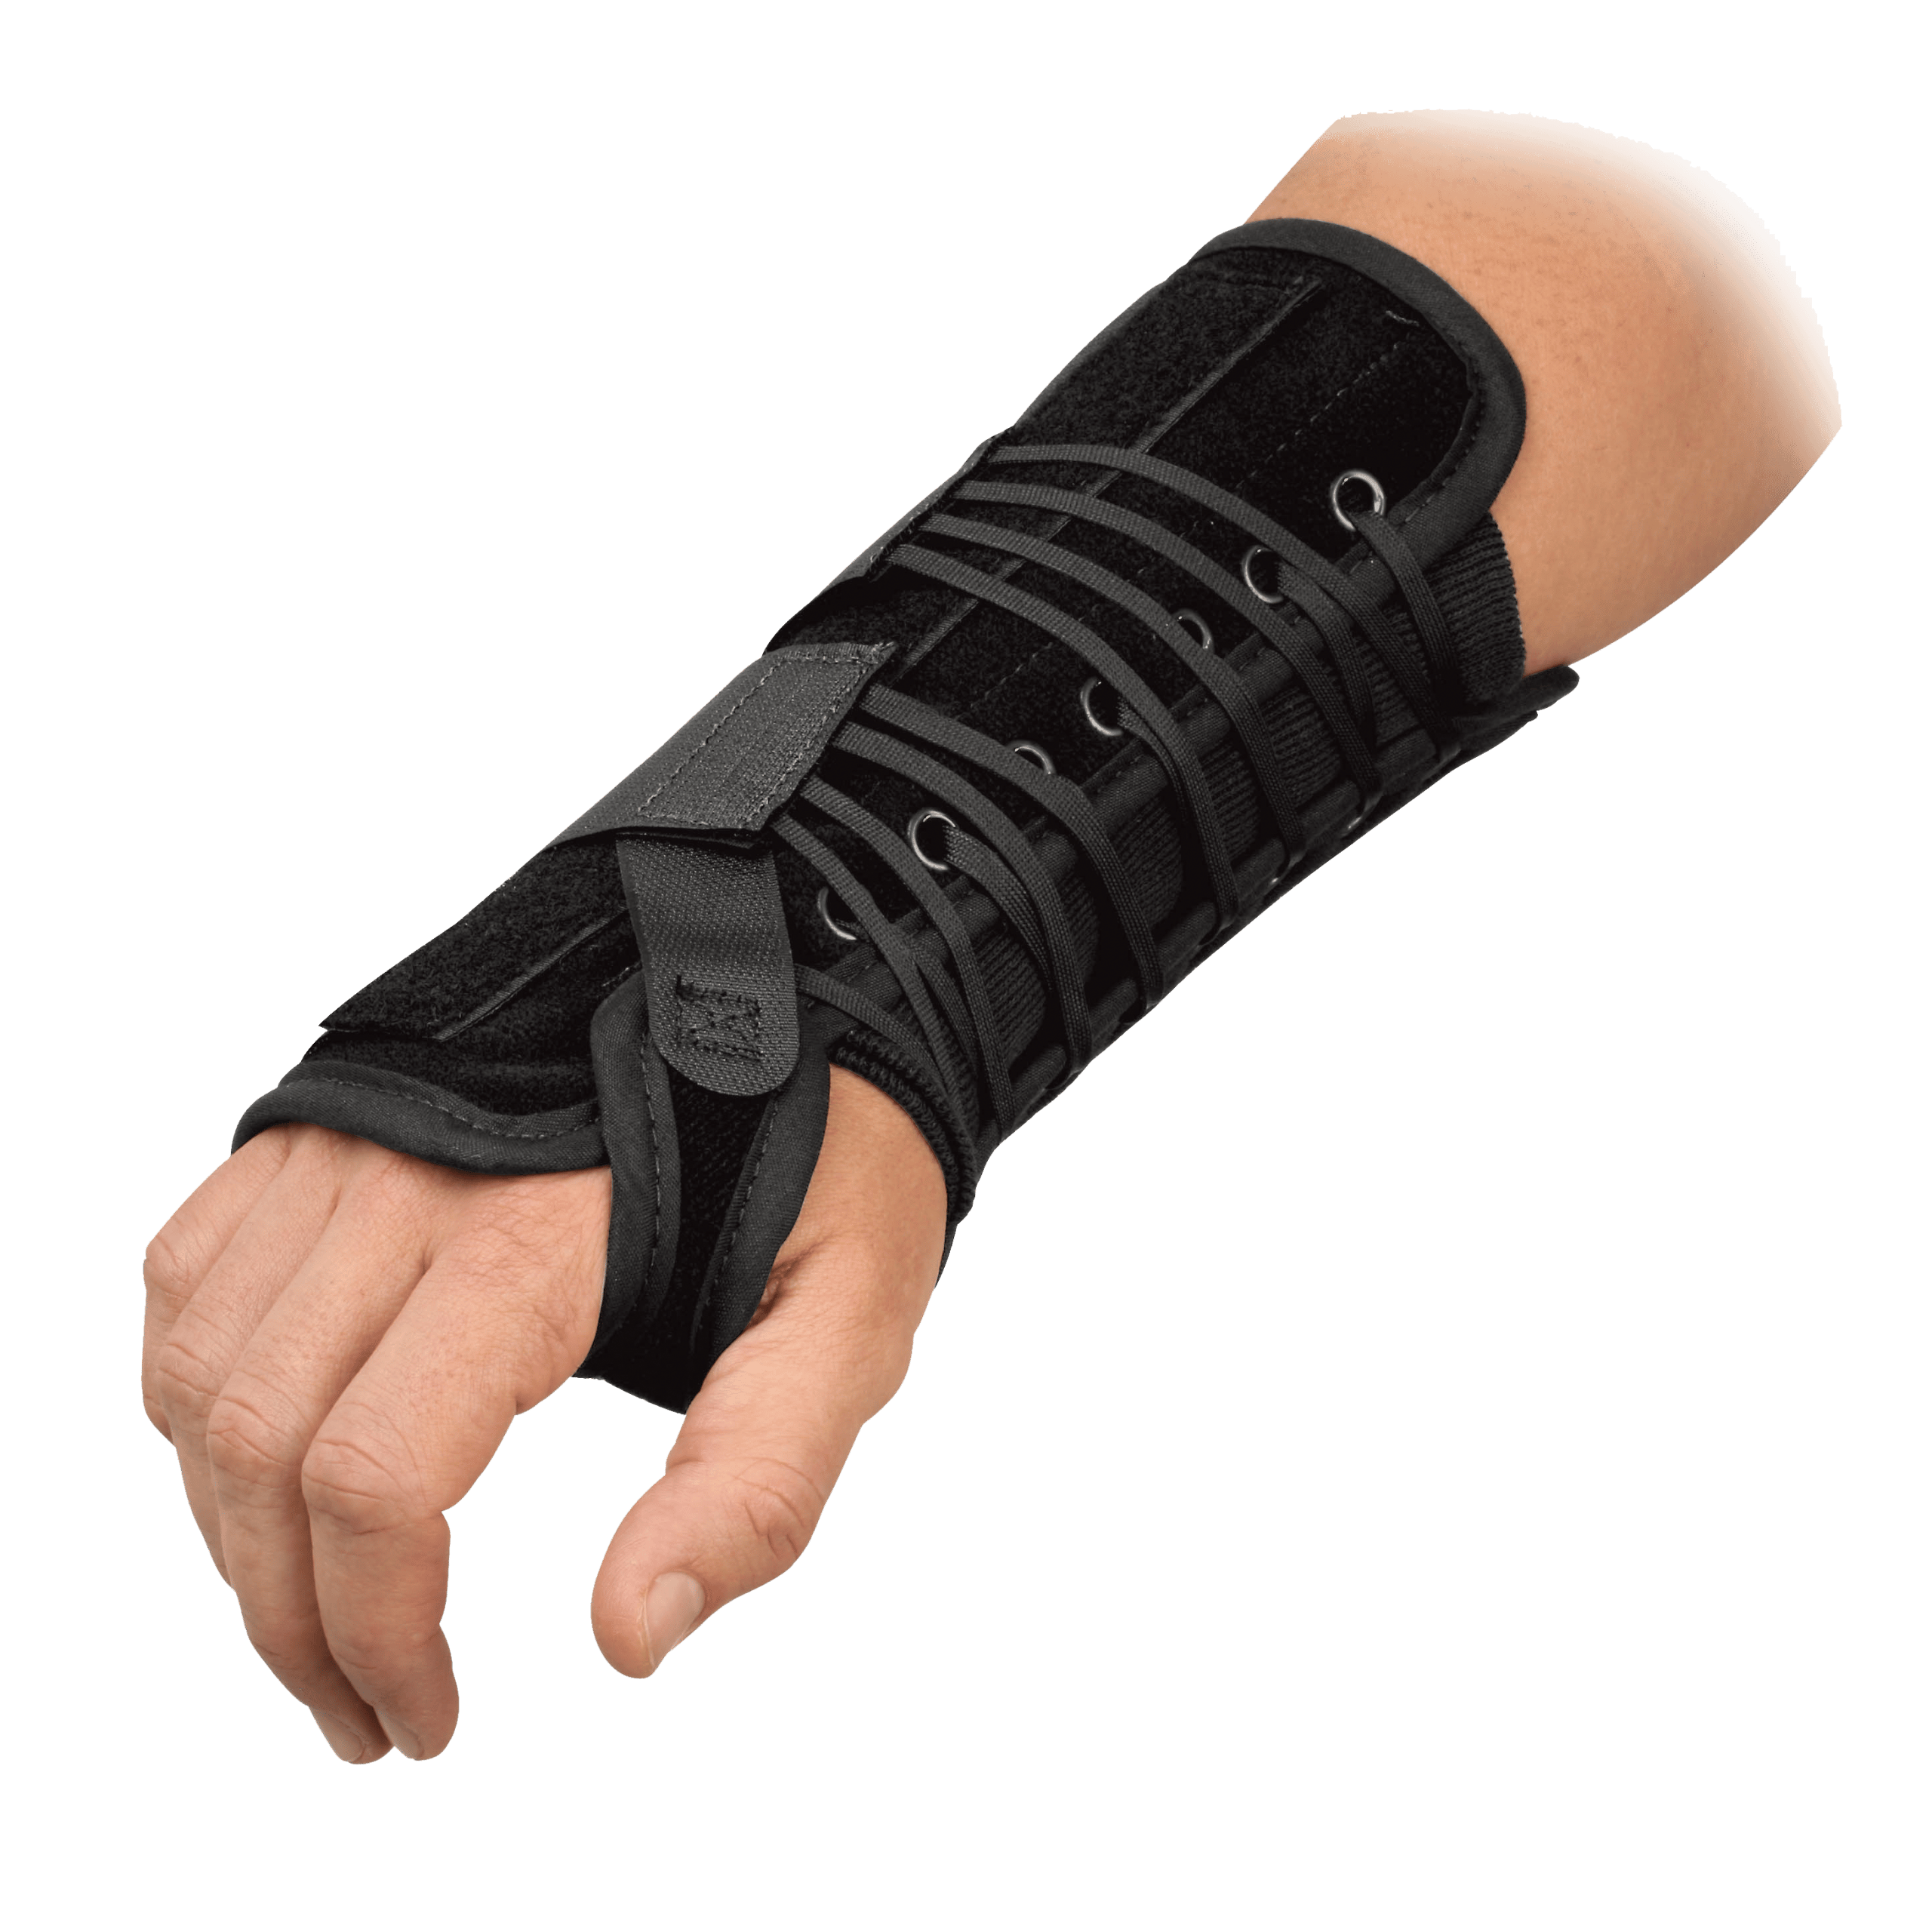 Wrist Braces vs. Splints: Which is Best for You?